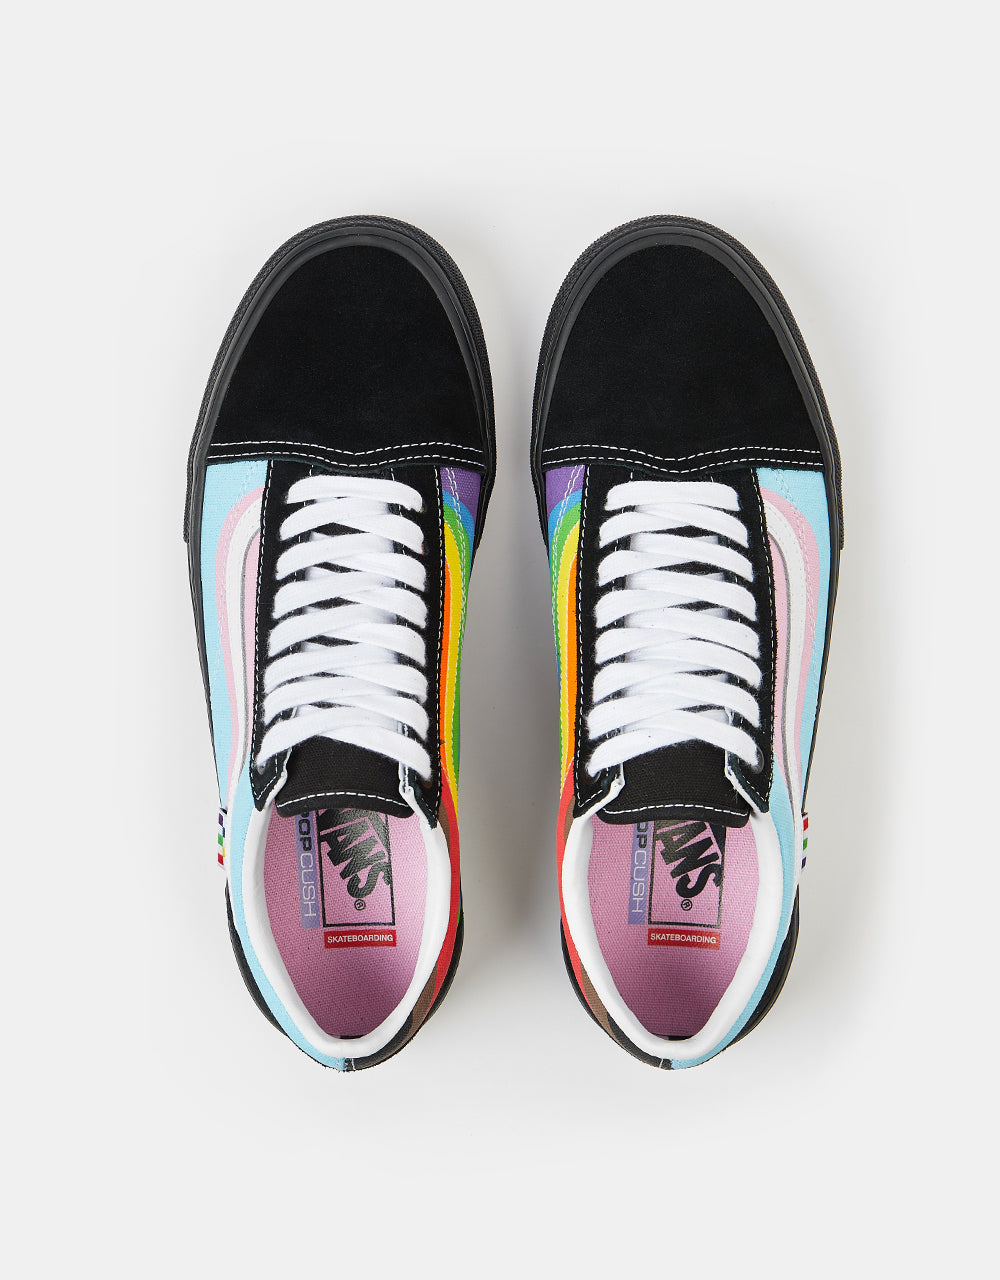 Vans Skate Old Skool Shoes - (Pride) Multi